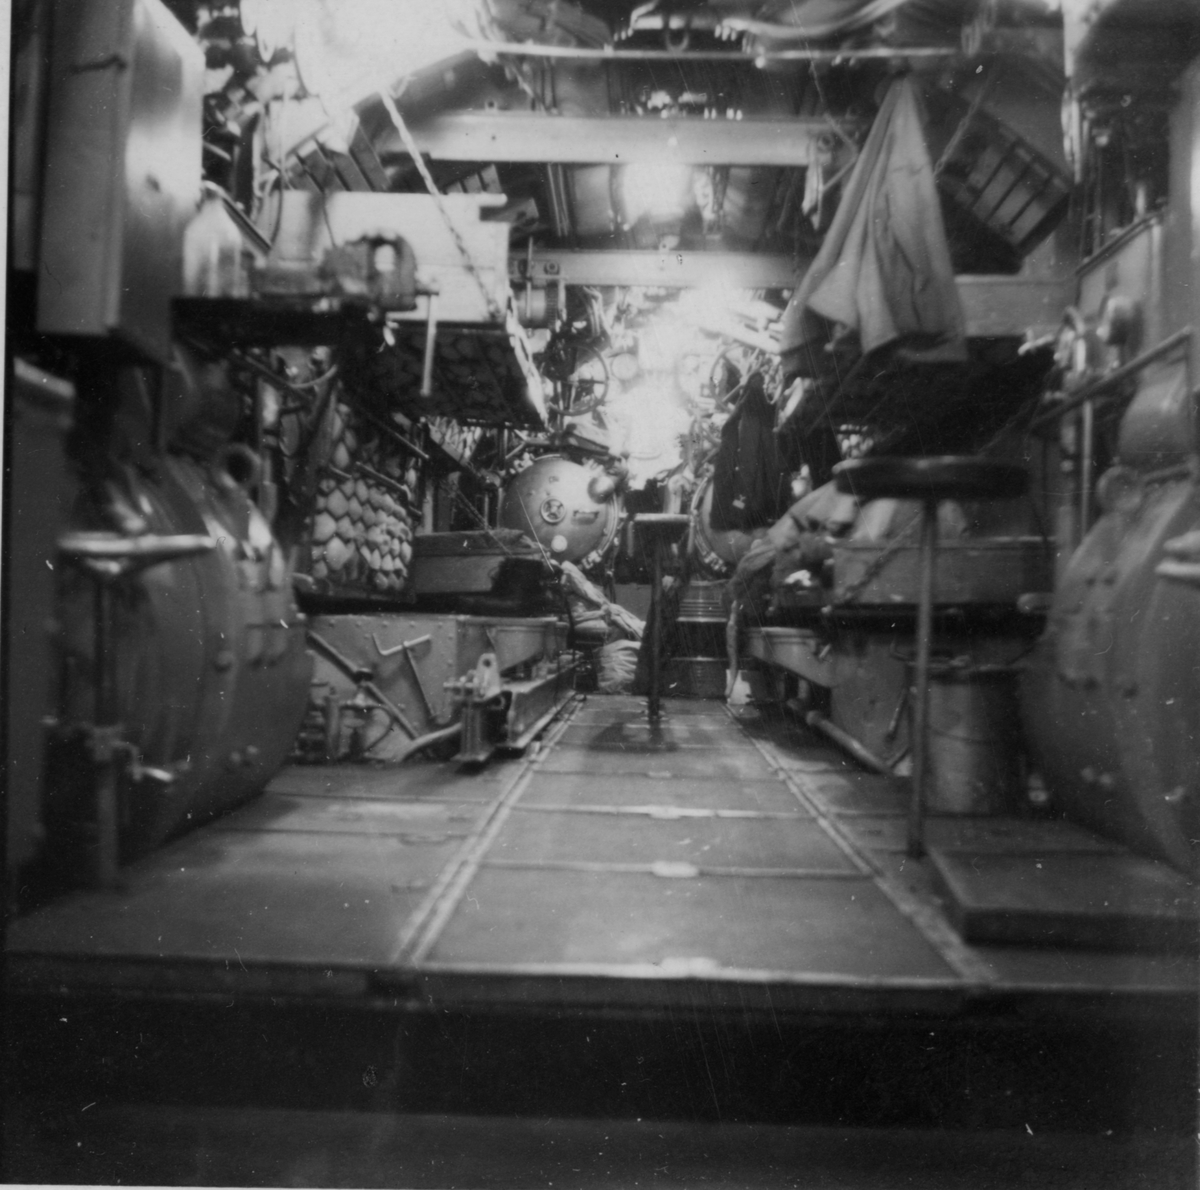 Lennart Wållberg Norrköping var förste kock på ubåten Neptun 1954 Neptuns långresa 1954.
Elektromotorrummet sett akterut. Tittar man noga kan man se åtta stycken kojor,  fyra på varje sida, dessutom två torpedtuber. Vid klargöring av torpederna fick ingen ligga i sin koj